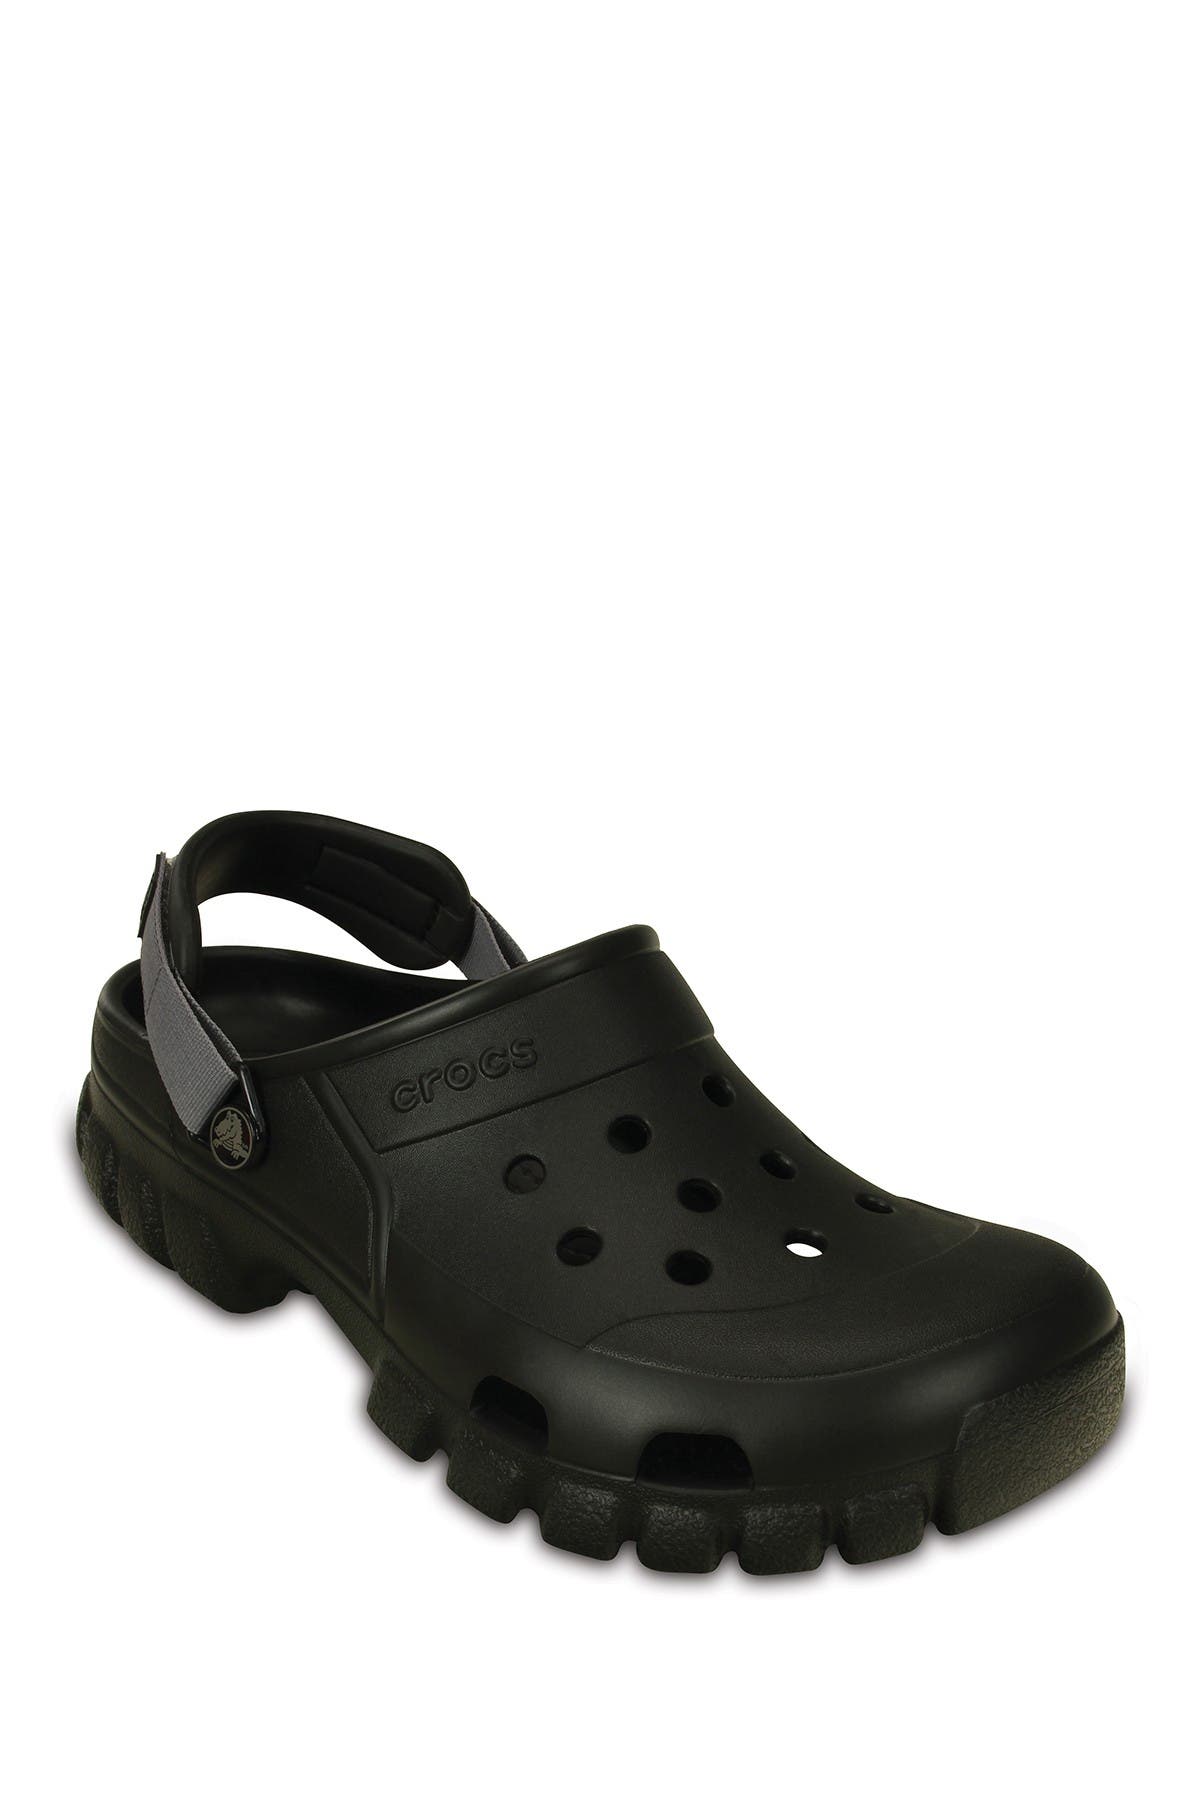 black off road crocs